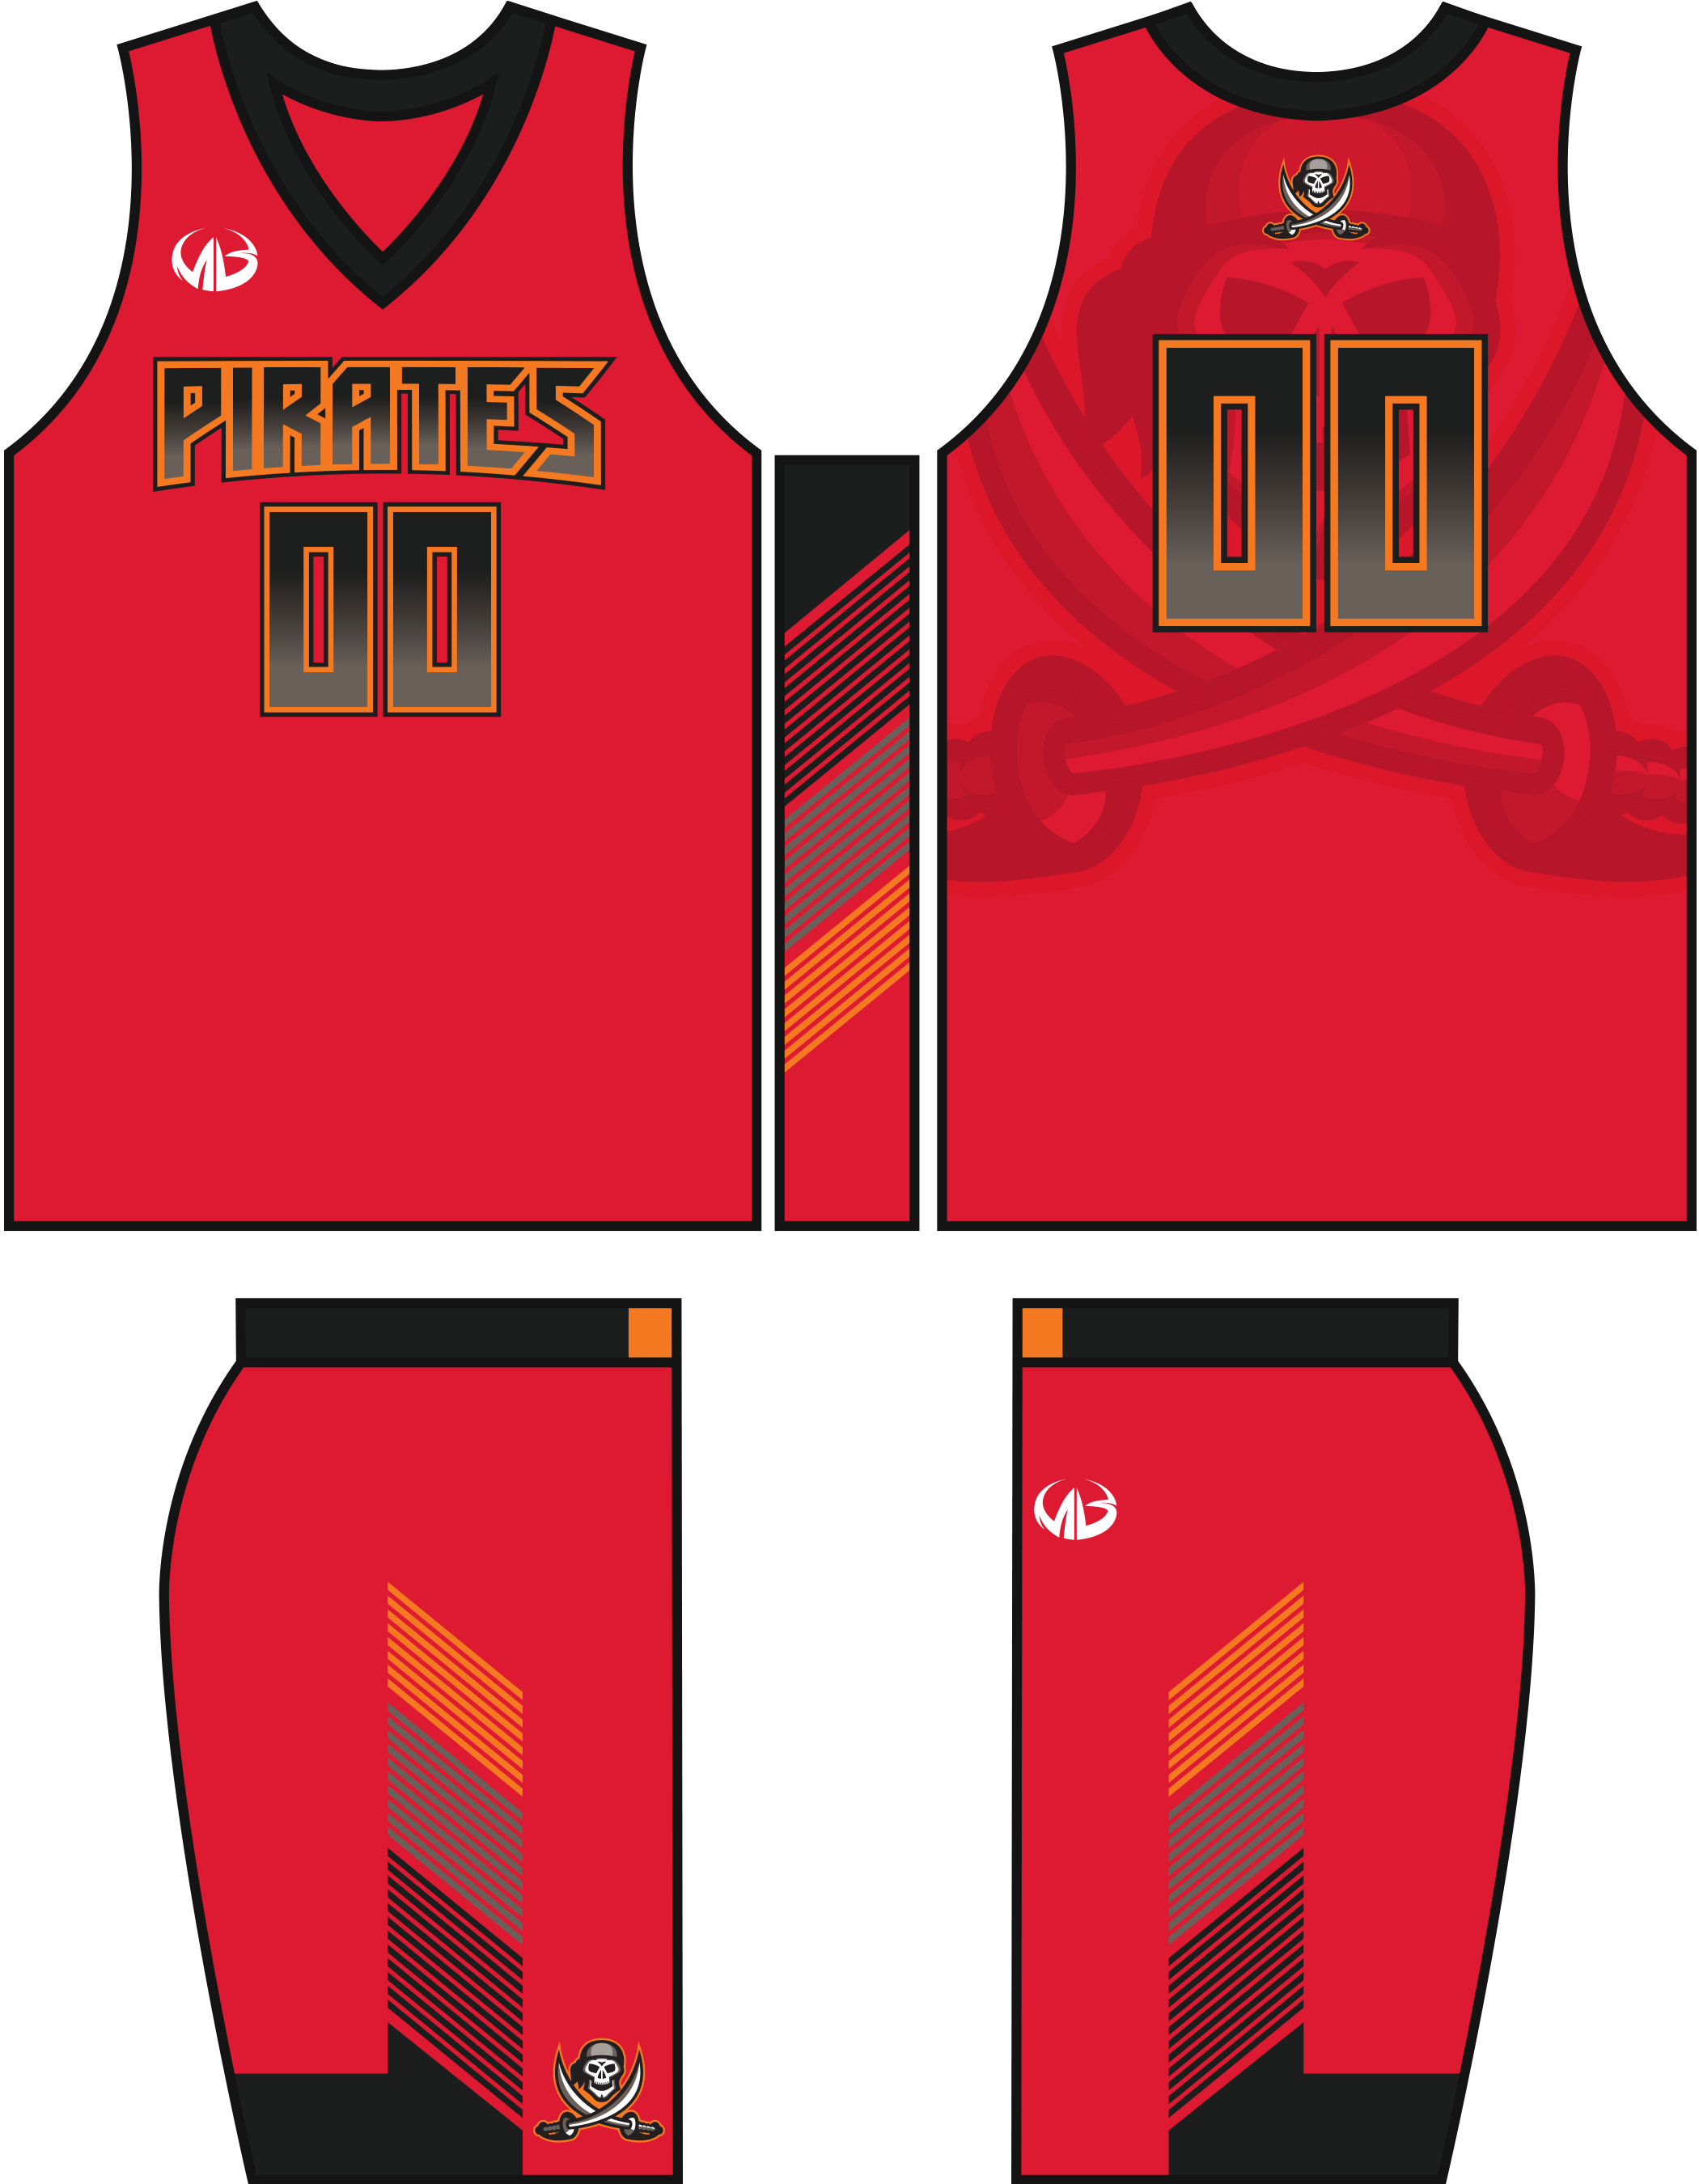 pirates basketball jersey